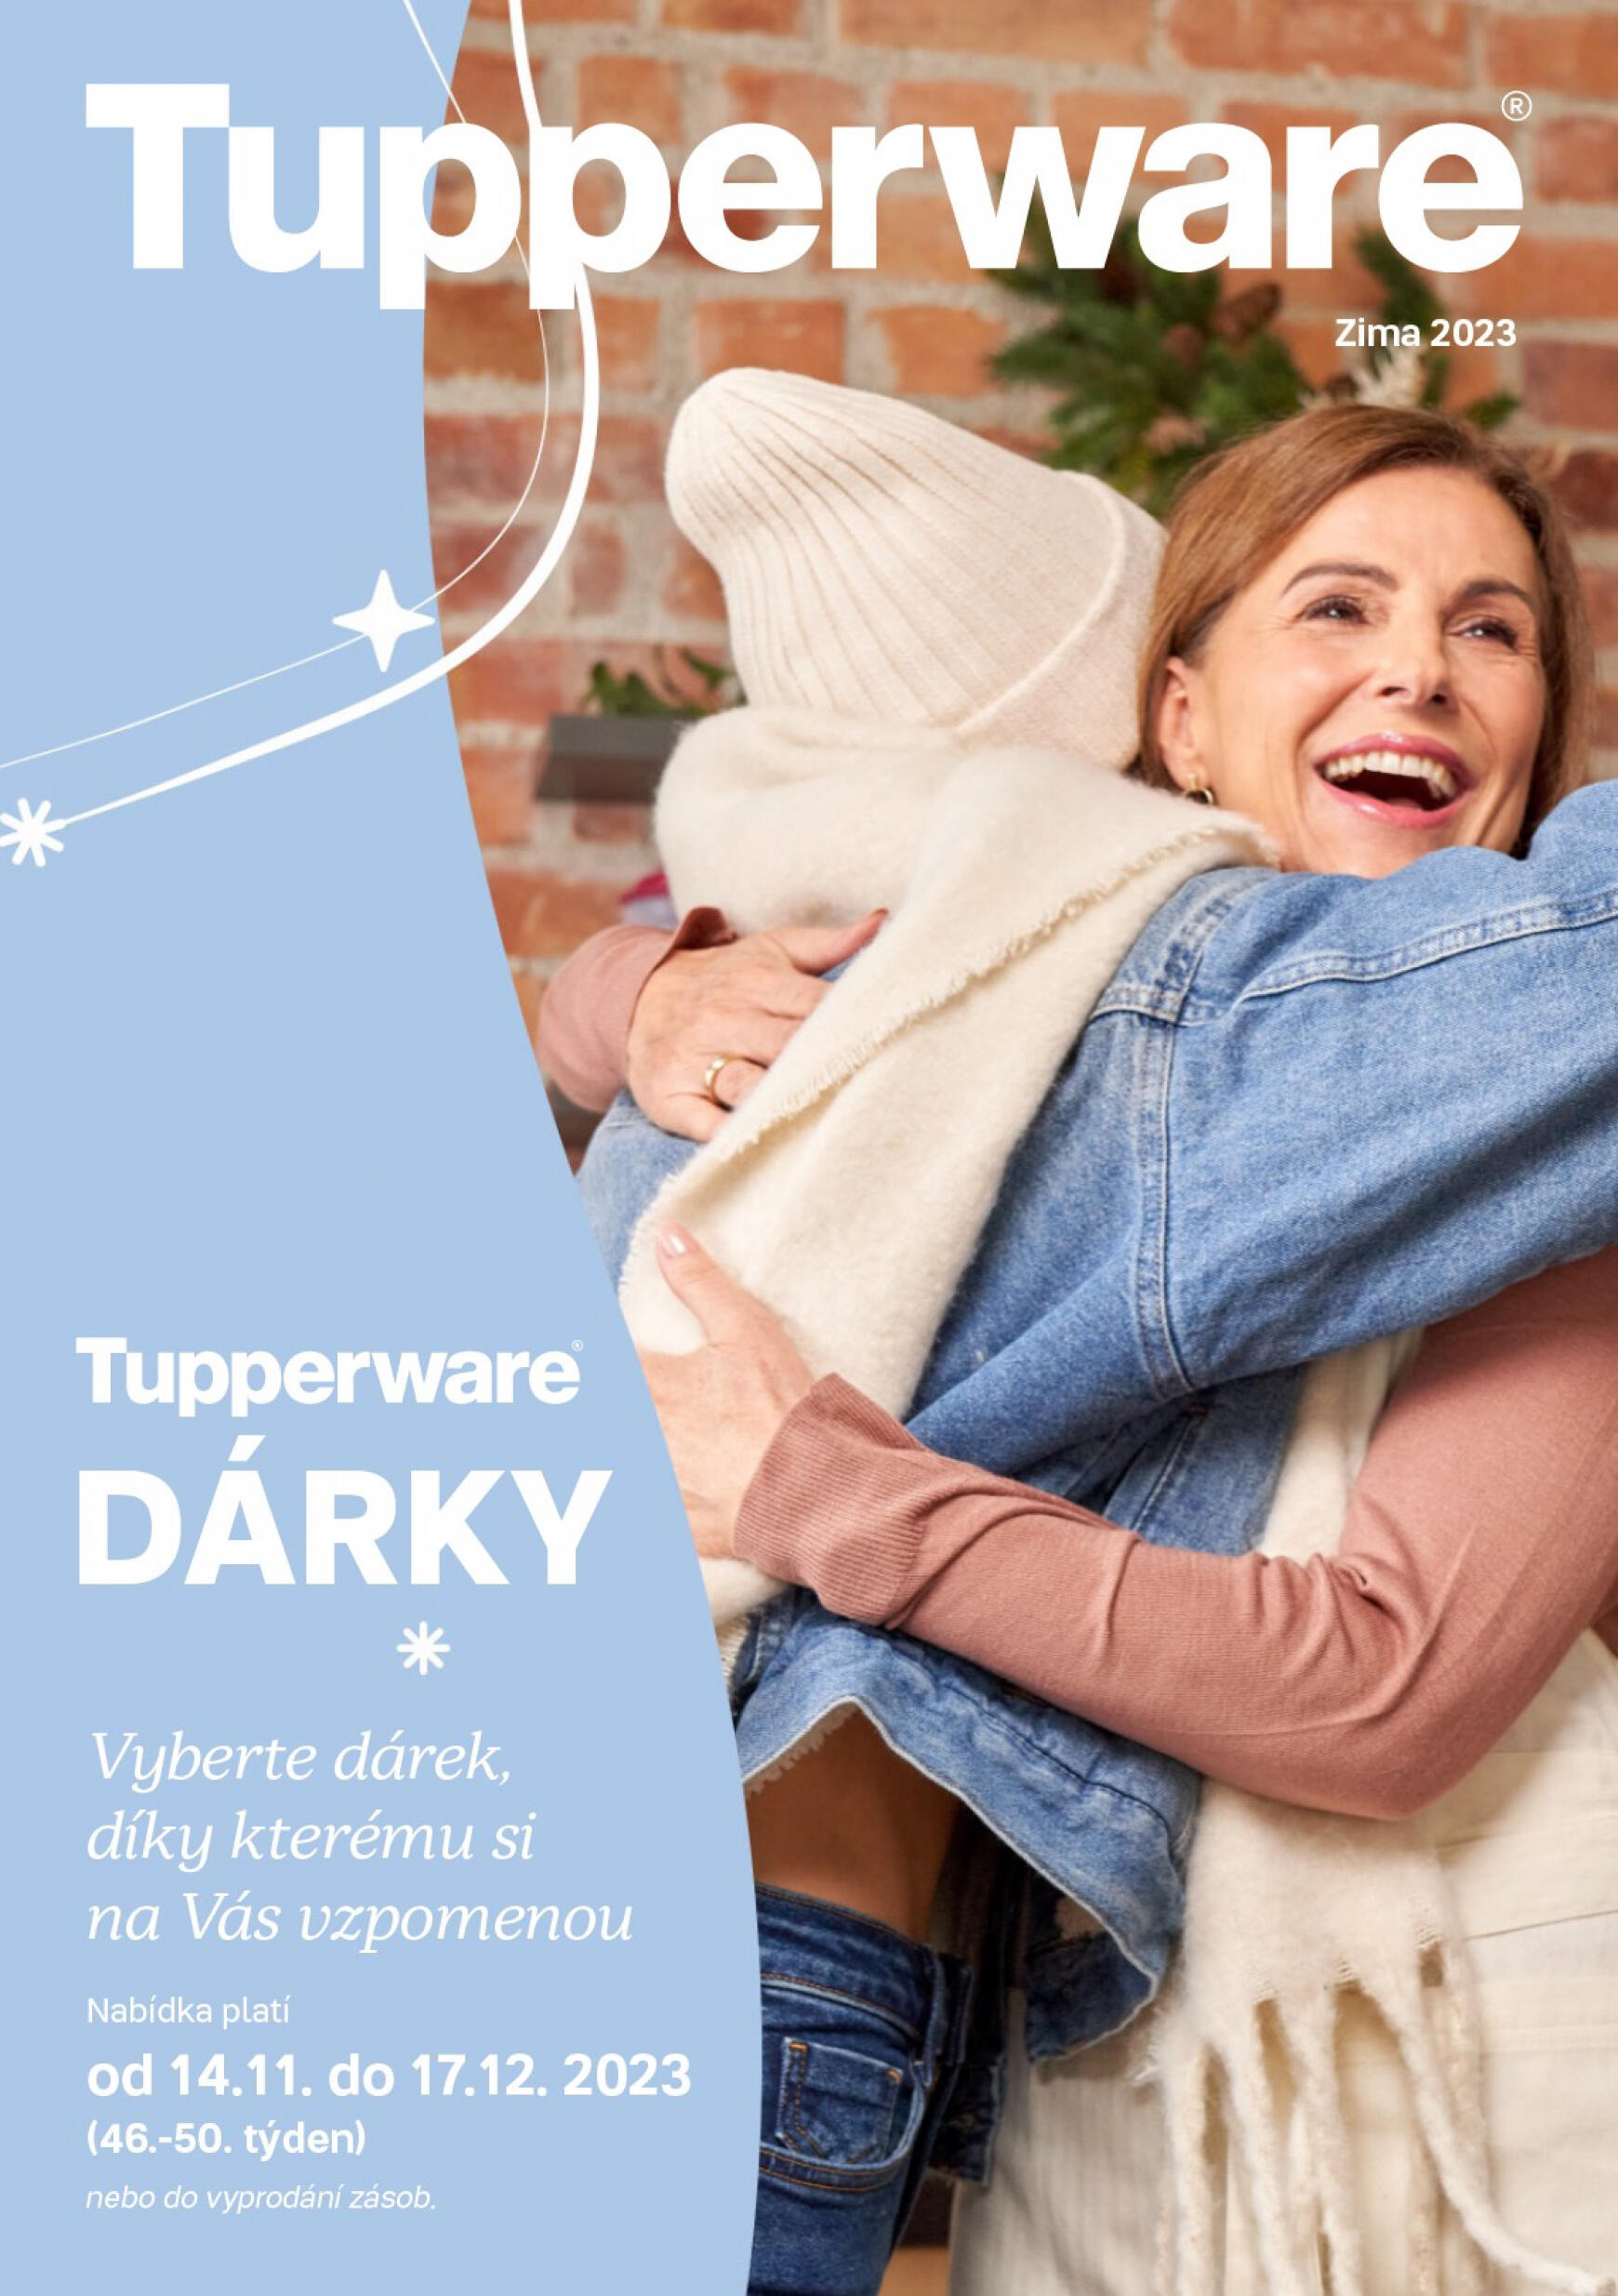 tupperware - Tupperware - Dárky platný od 14.11.2023